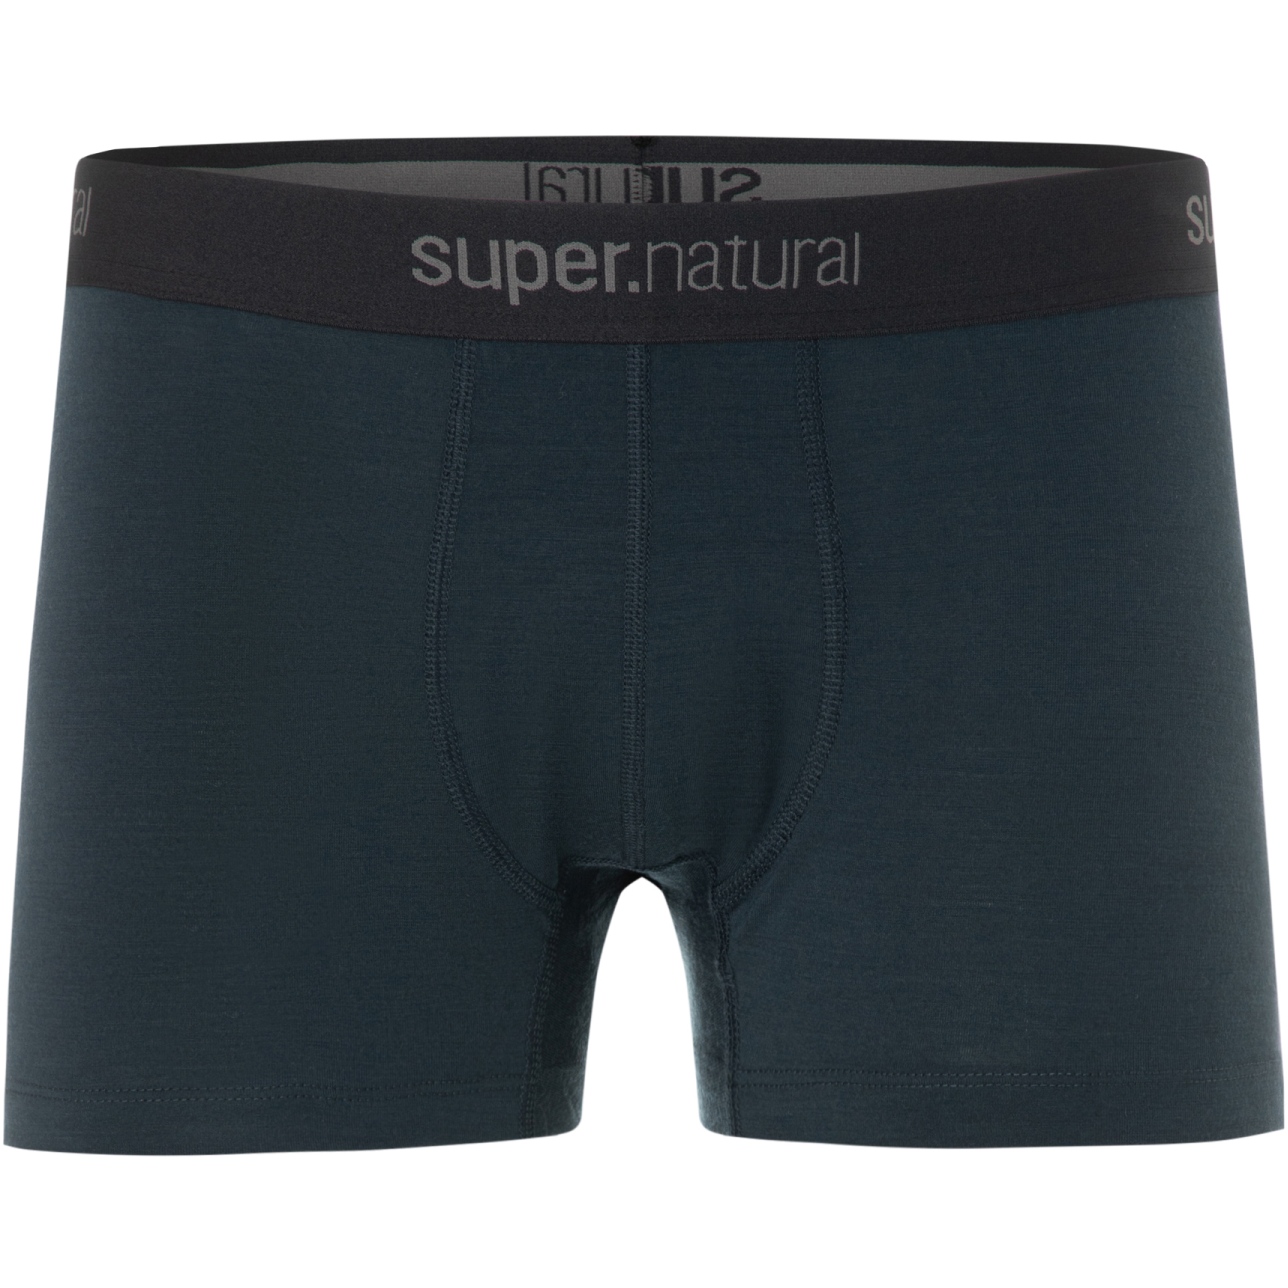 Produktbild von SUPER.NATURAL Tundra175 Boxershorts Herren - Blueberry